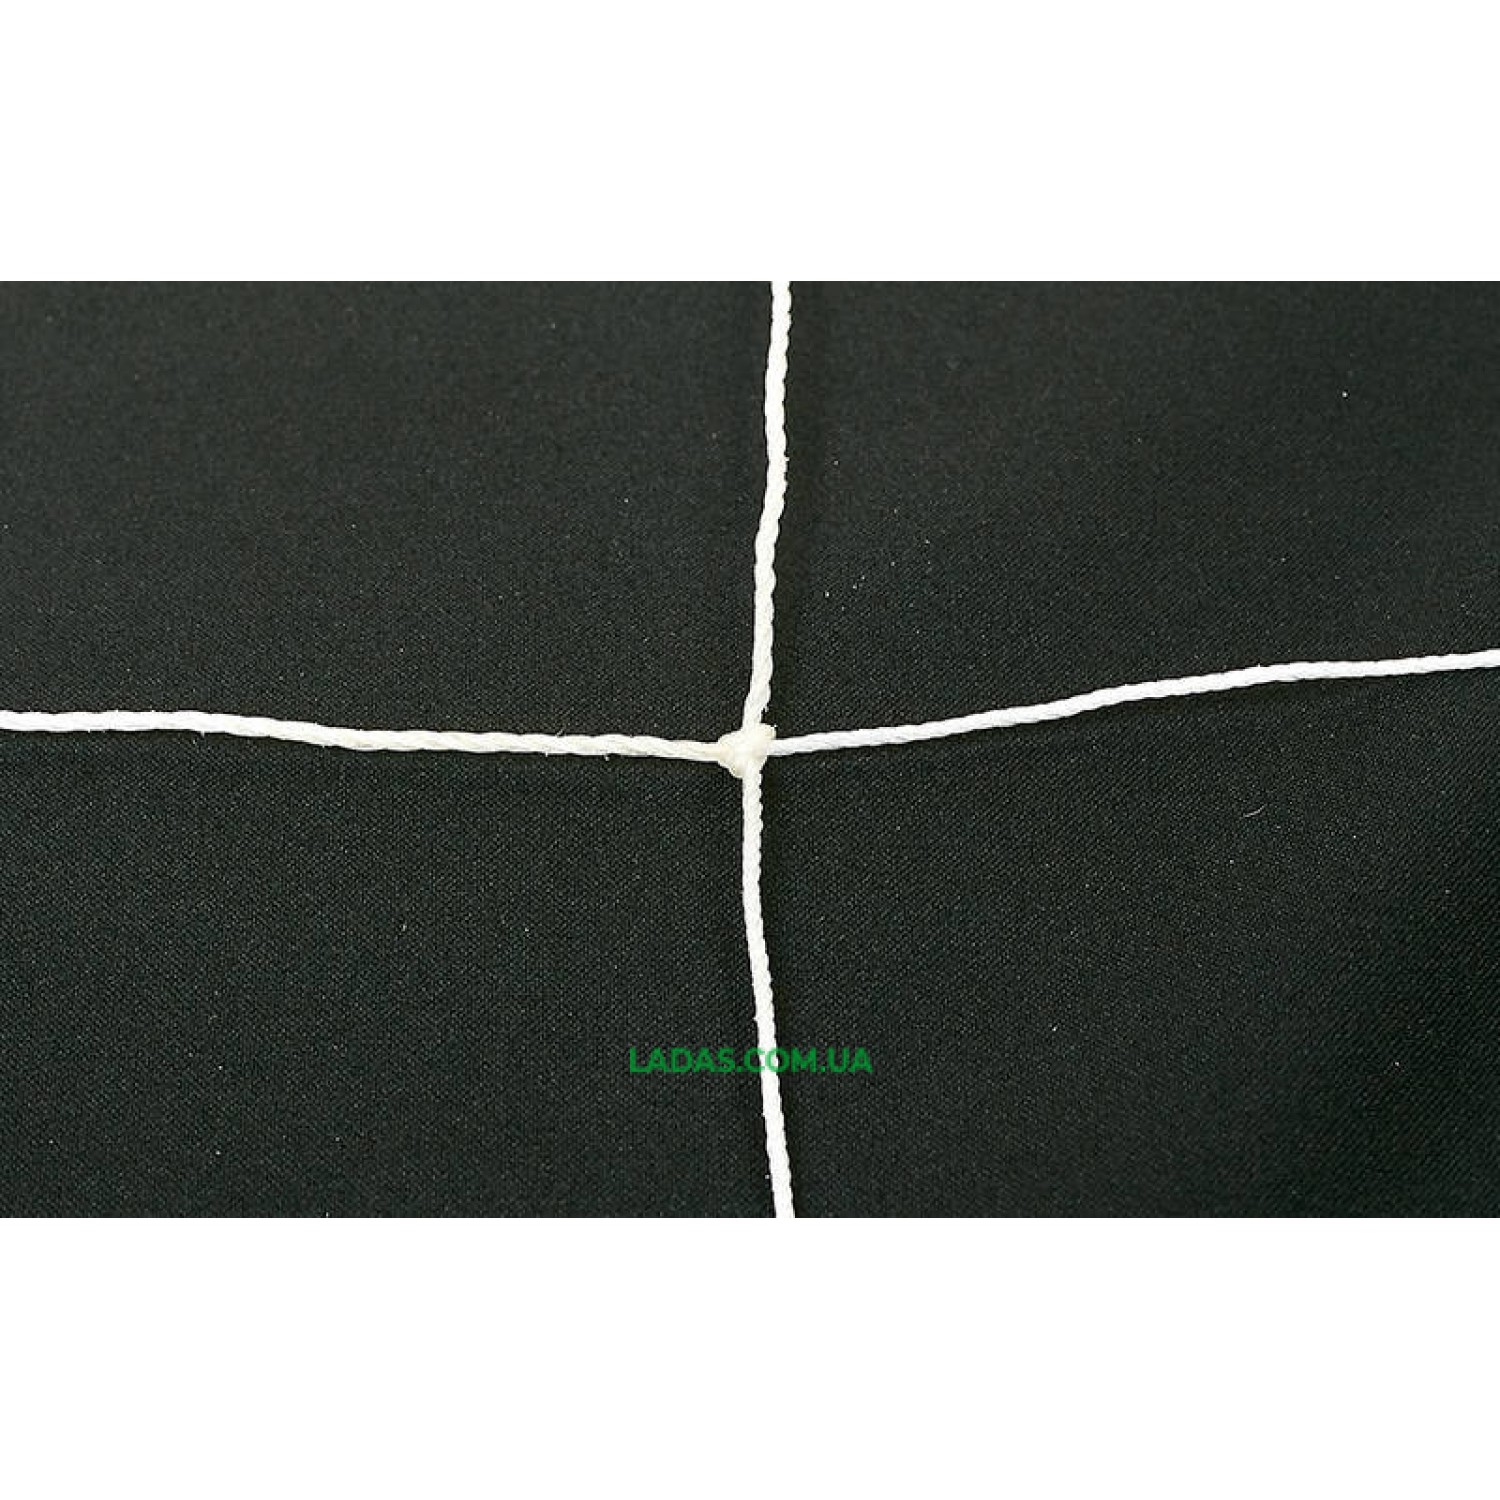 Сетка на ворота футбольные любительская узловая (2шт)(нить 1,5мм, ячейка 12x12см, р-р 2,5*7,4*2м)